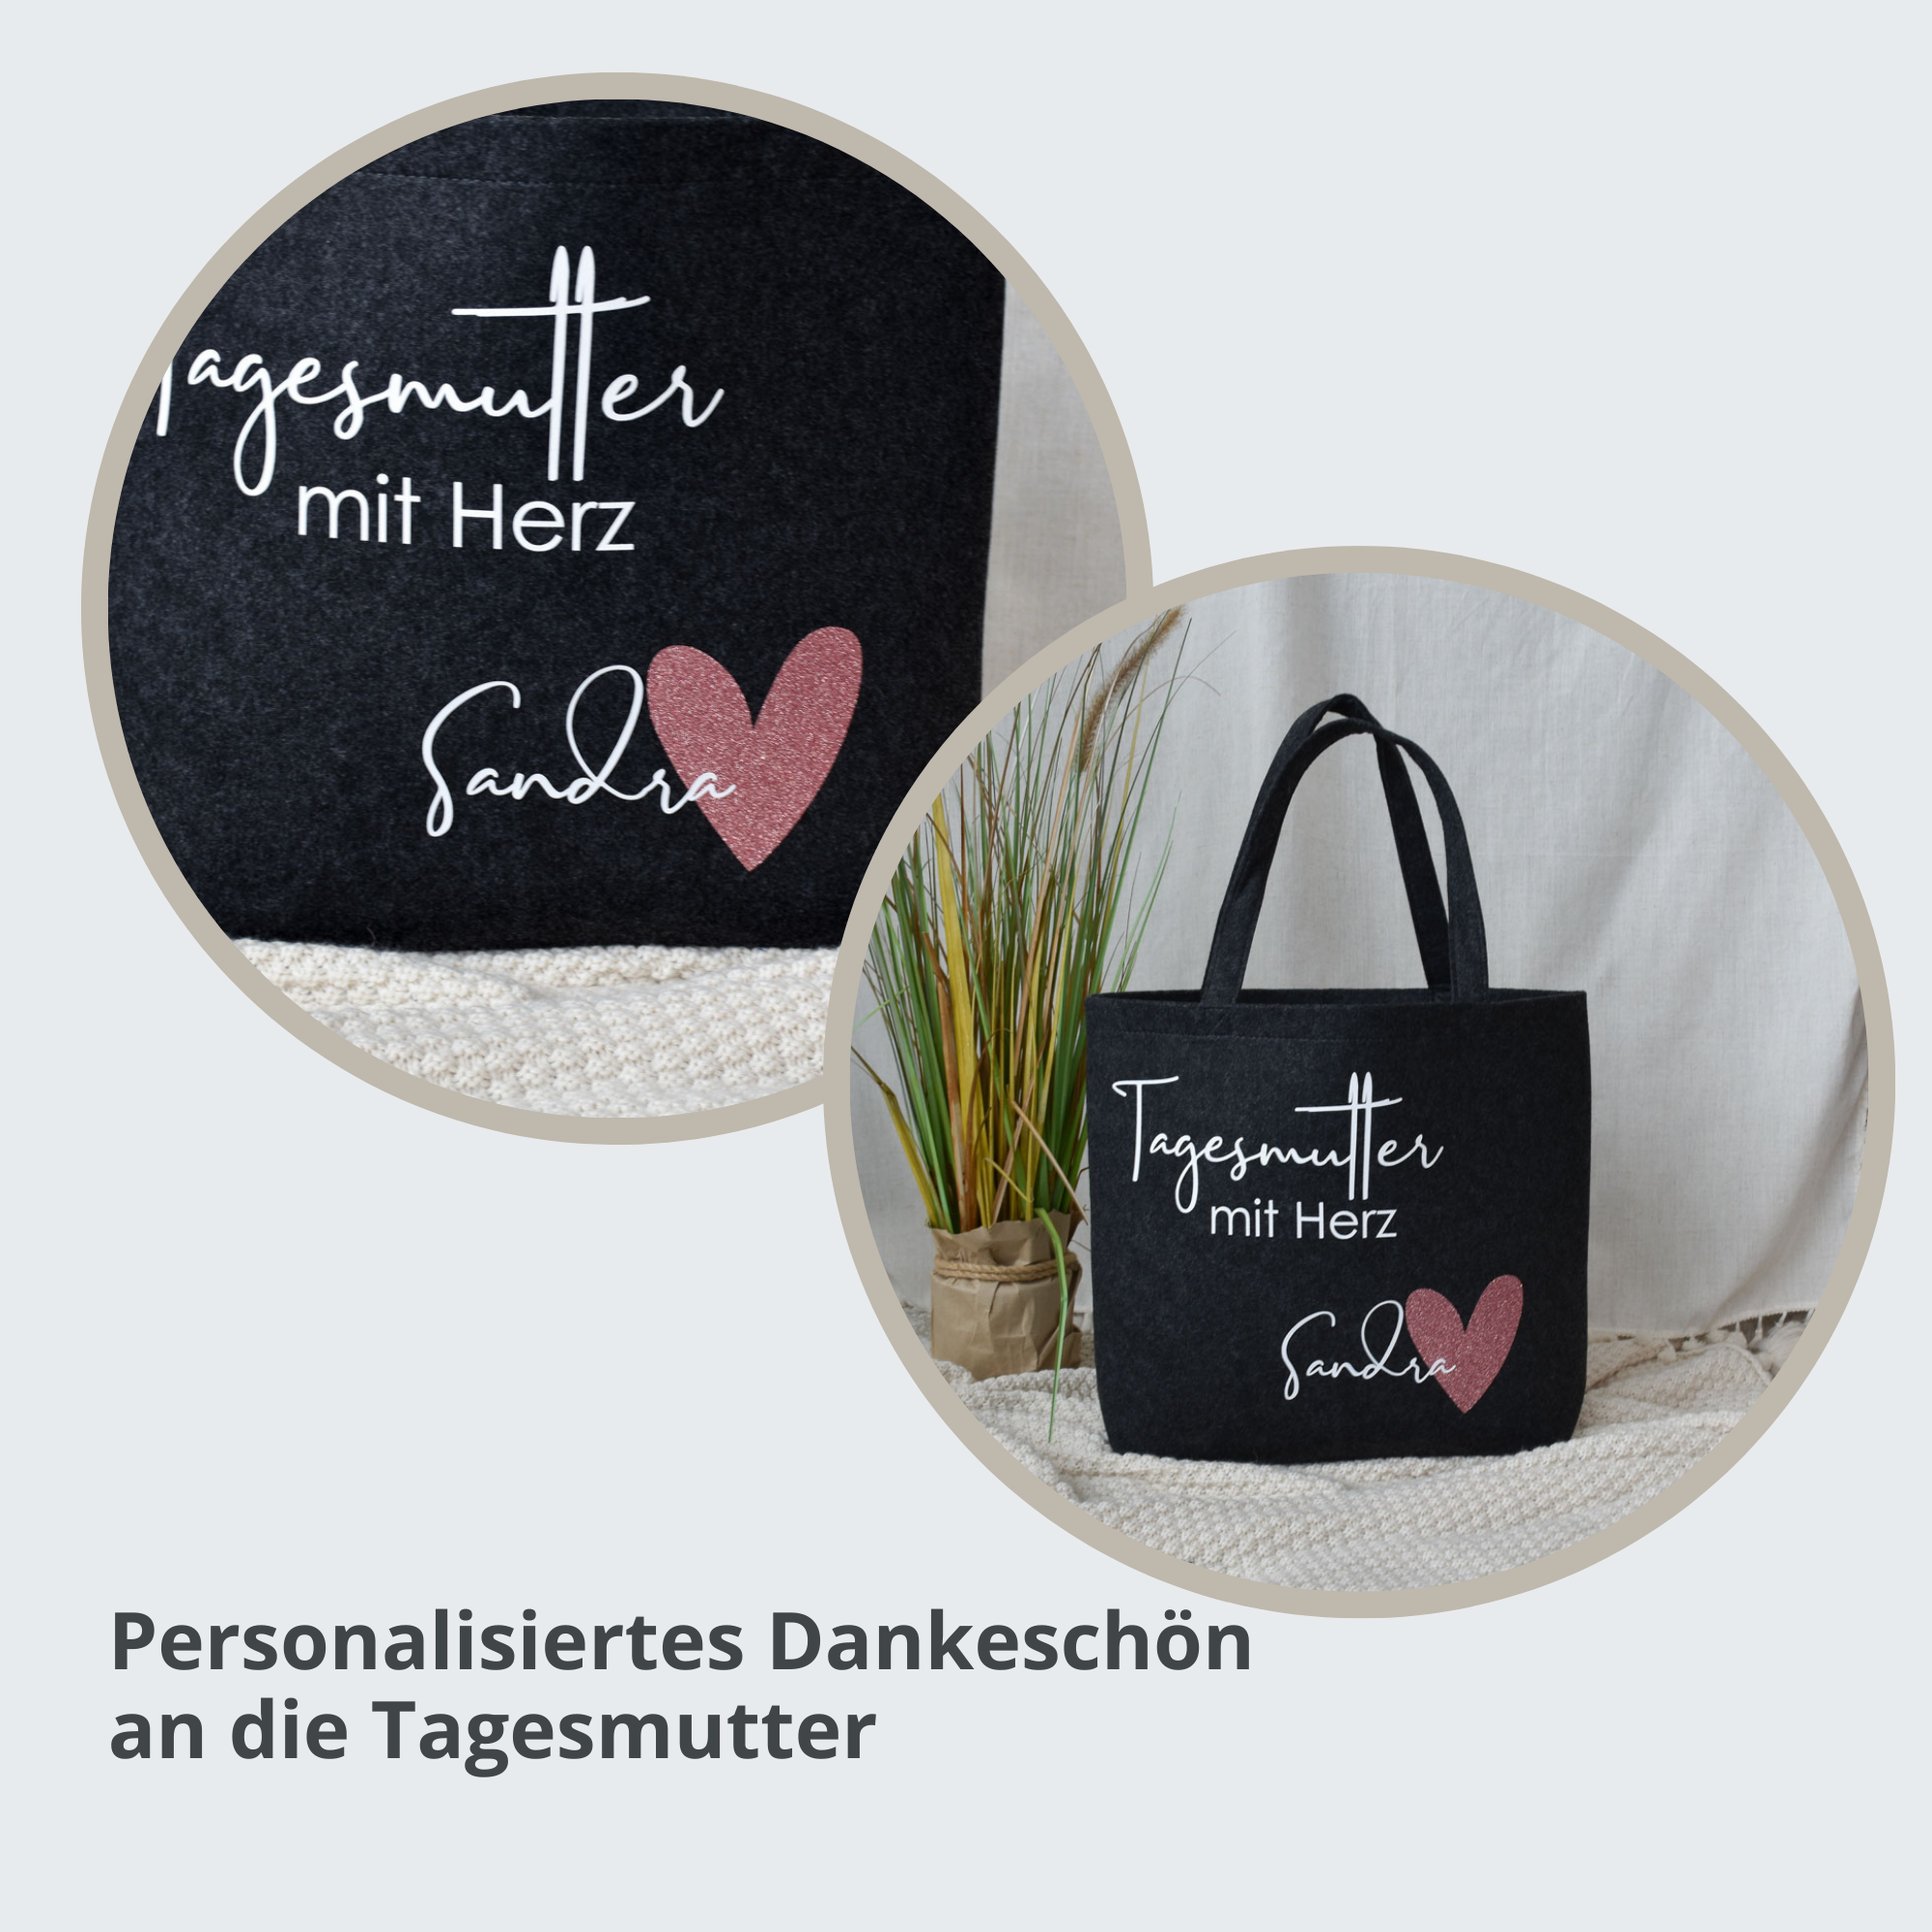 Maxi Filzshopper personalisiert "Tagesmutter mit Herz" mit Namen